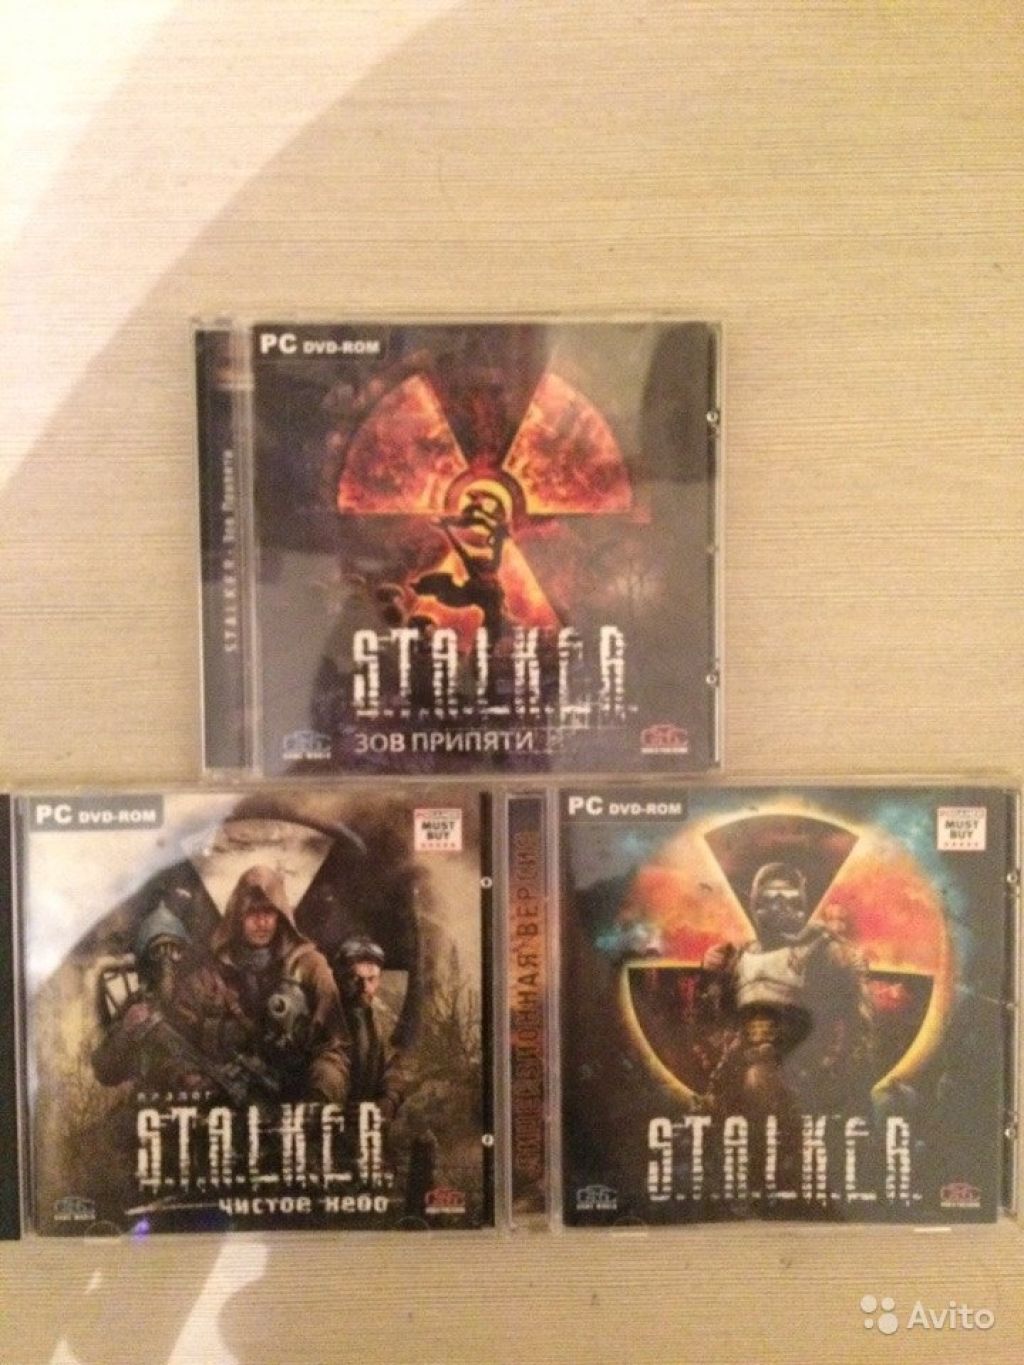 Stalker trilogy ps4. S.T.A.L.K.E.R. трилогия обложка. Сталкер трилогия трилогия диск. Сталкер обложка диска. Сталкер трилогия обложка.